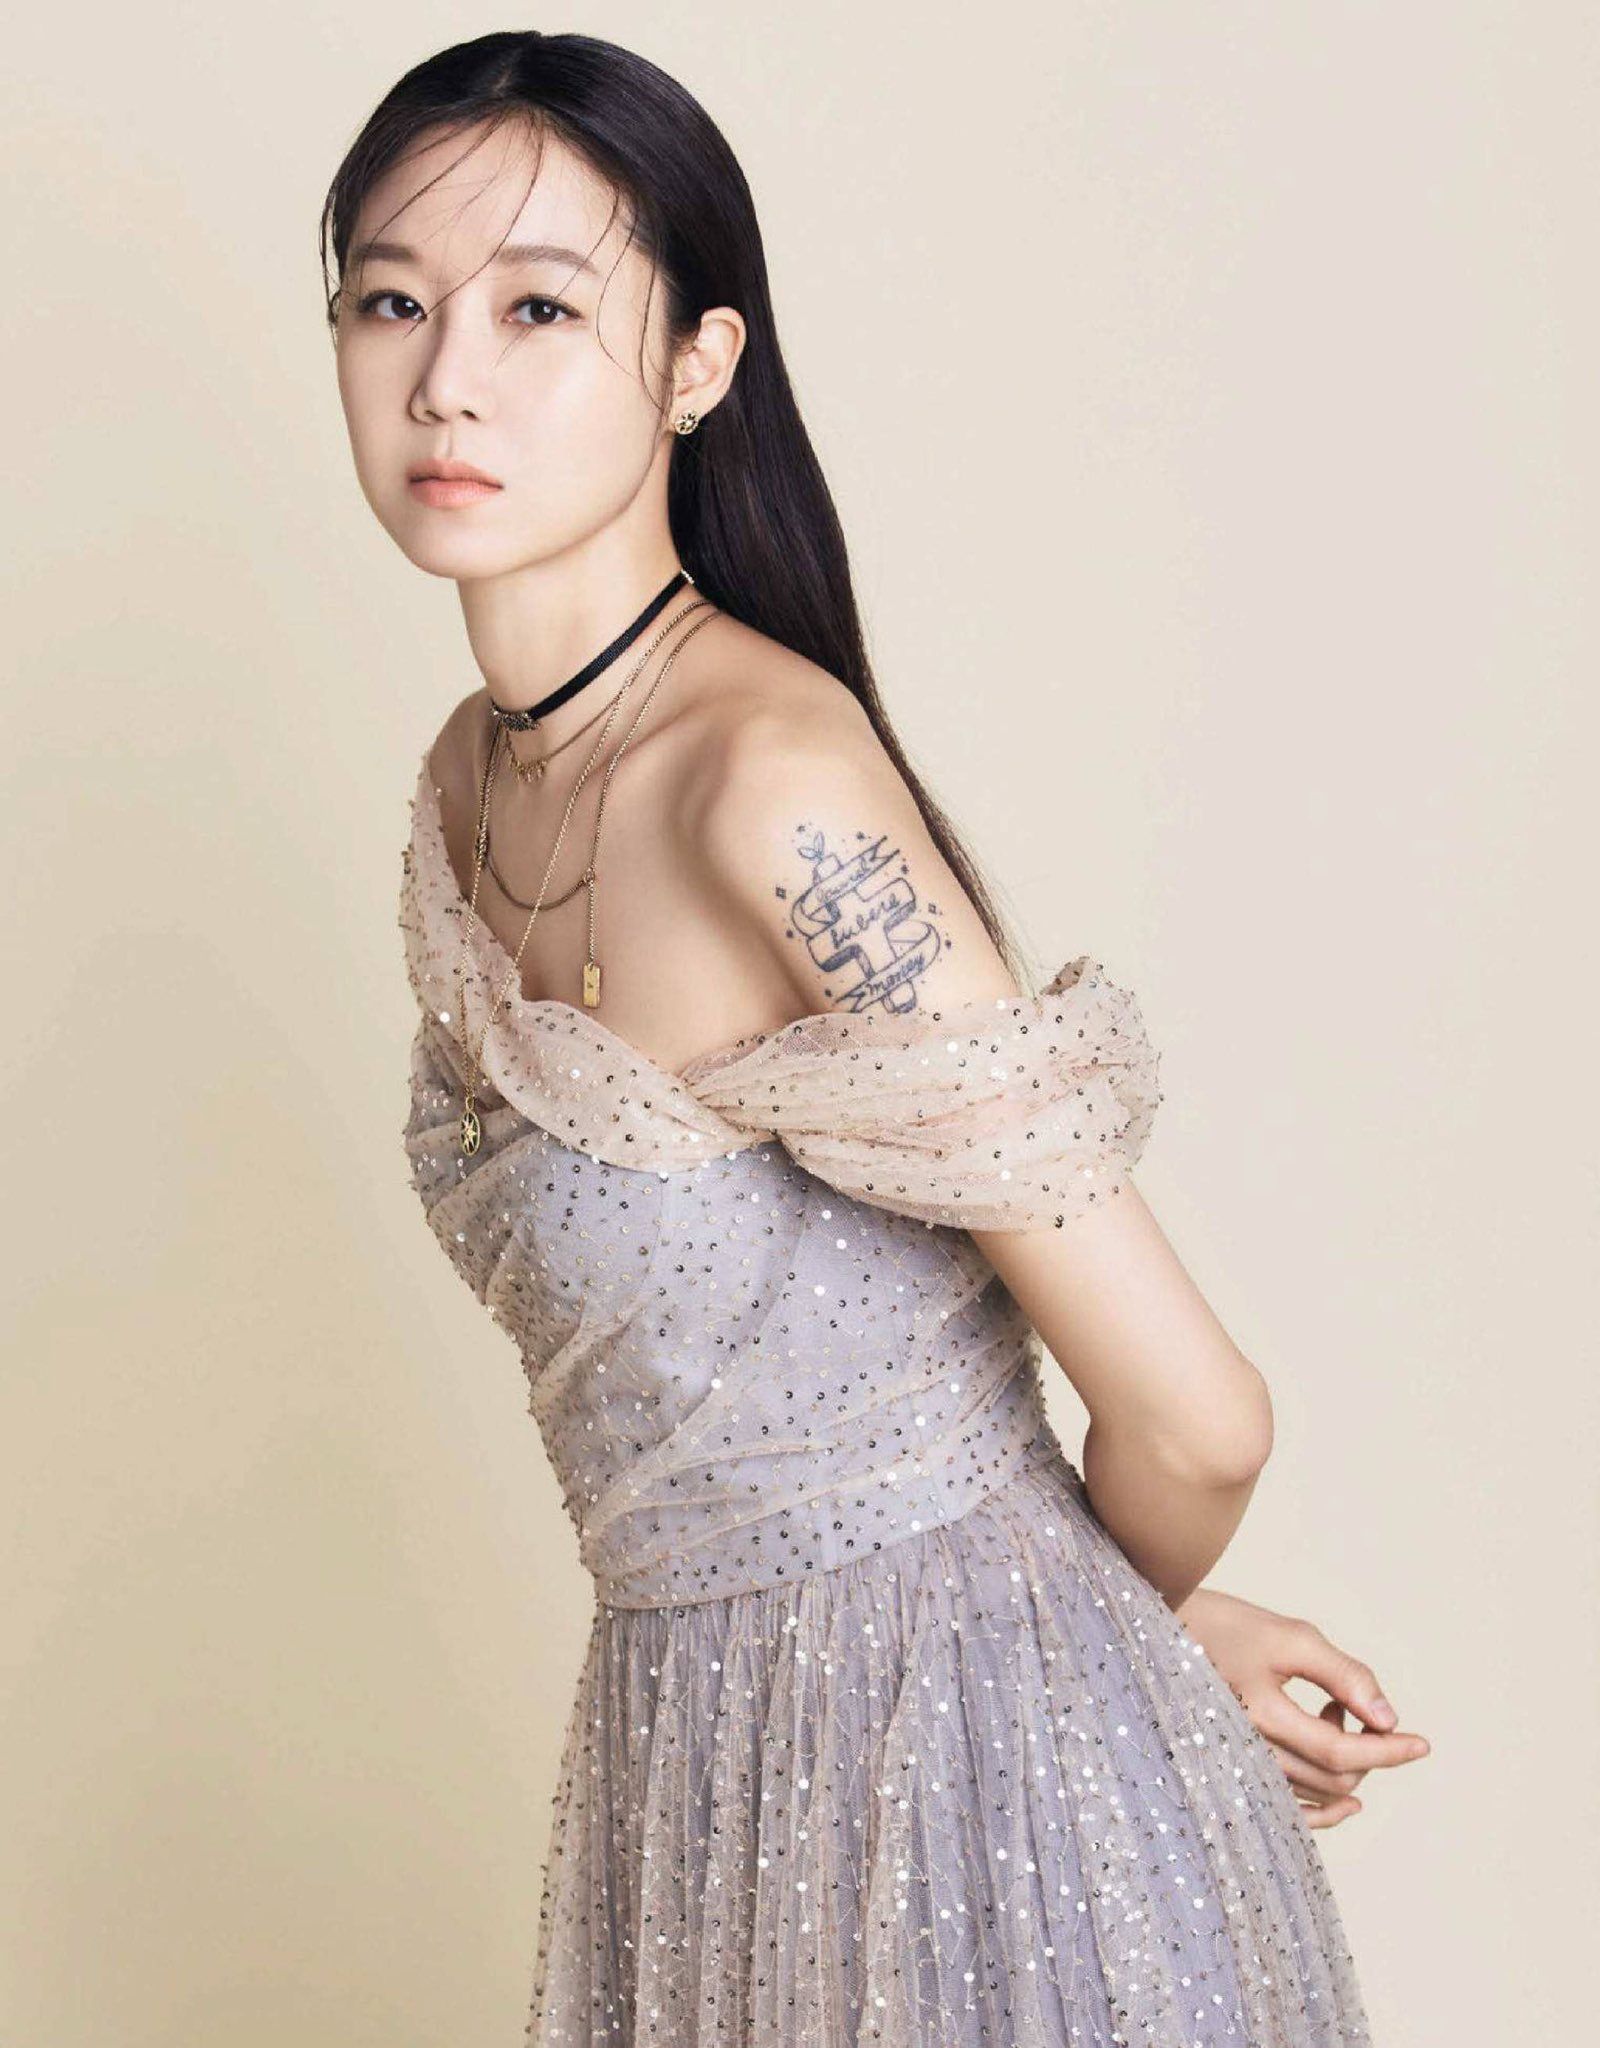 Gong Hyo Jin vừa bắt được hoa của Son Ye Jin đã thông báo kết hôn, liệu chị đẹp sẽ mặc váy cưới kiểu gì trong hôn lễ tương lai - Ảnh 4.